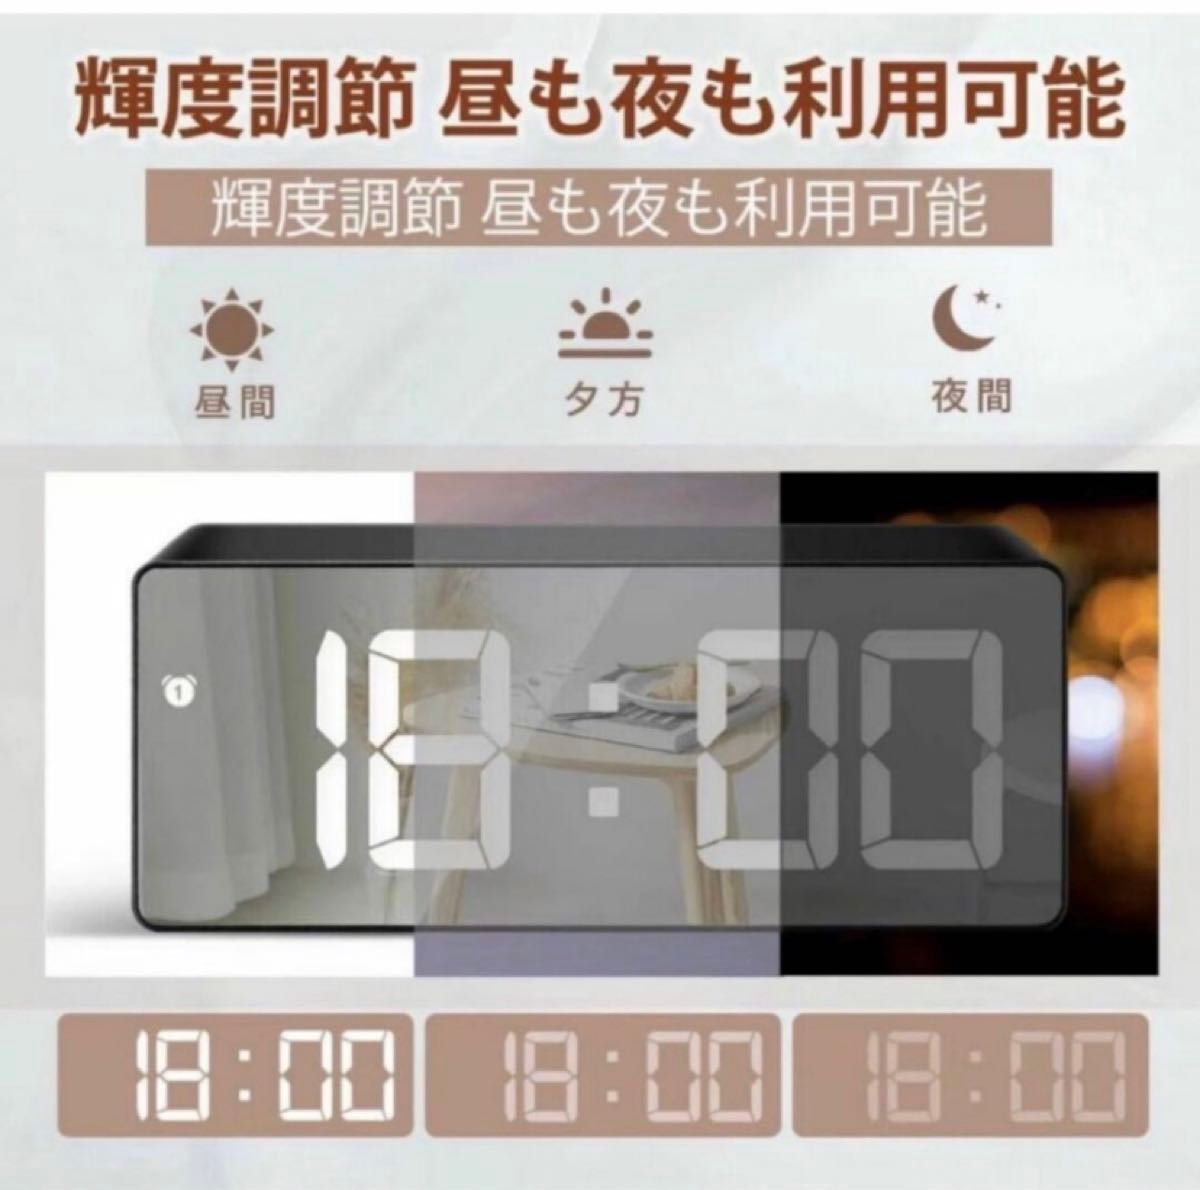 デジタルLED時計 目覚まし時計 置き時計 温度表示明るさ調整 大画面 アラーム機能